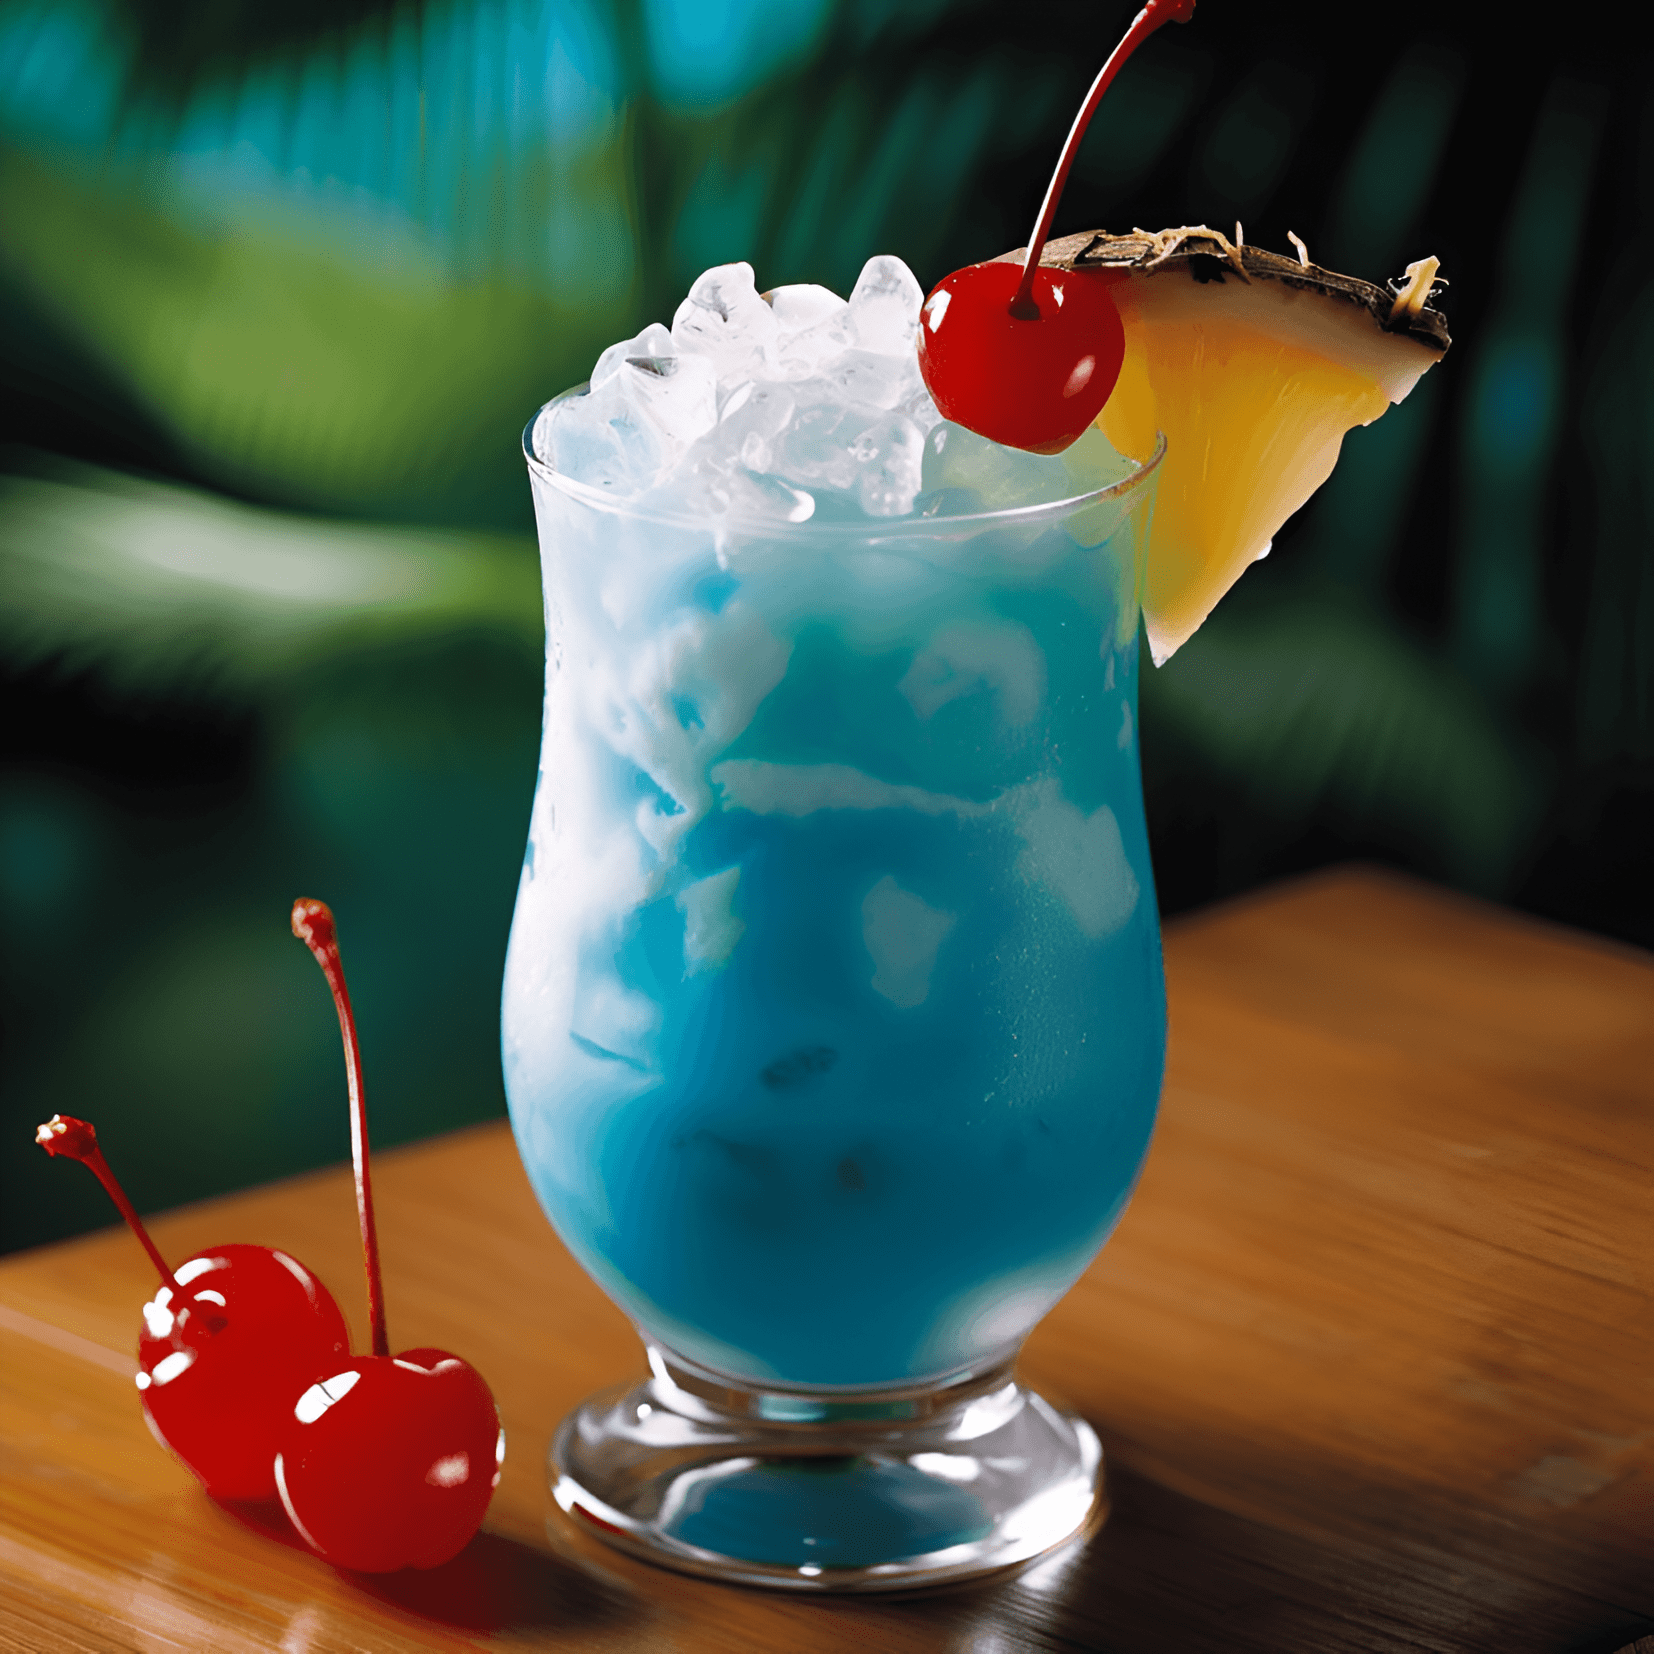 El cóctel Blue Hawaii tiene un sabor refrescante, dulce y ligeramente ácido. La combinación de jugo de piña, mezcla de dulce y agrio y Blue Curaçao crea un perfil de sabor afrutado y tropical, mientras que el vodka y el ron ligero agregan un toque sutil.